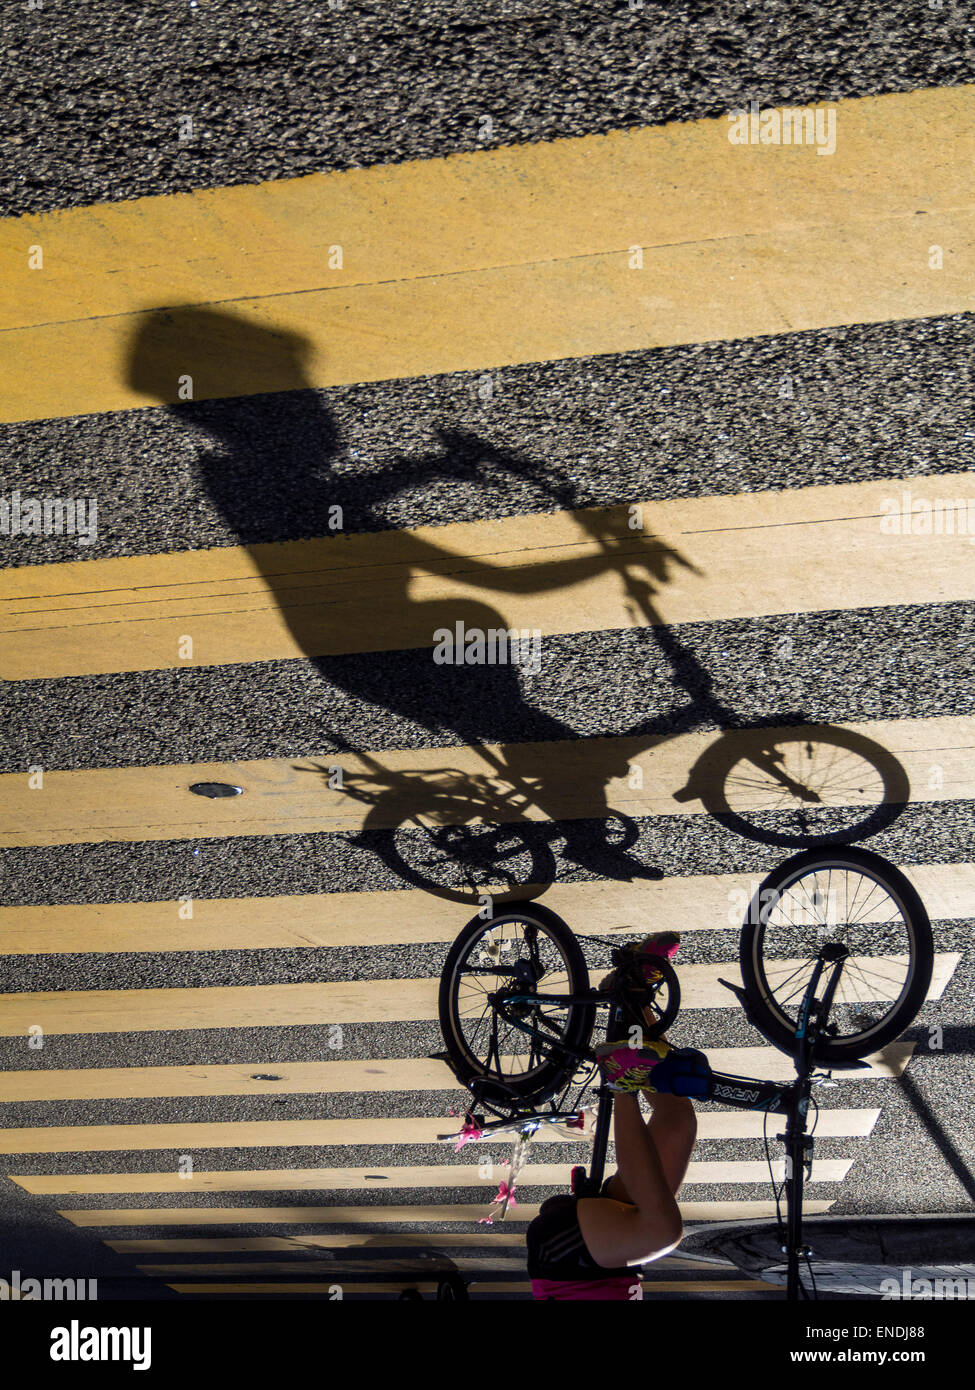 L'envers de l'image l'ombre d'un cycliste Banque D'Images